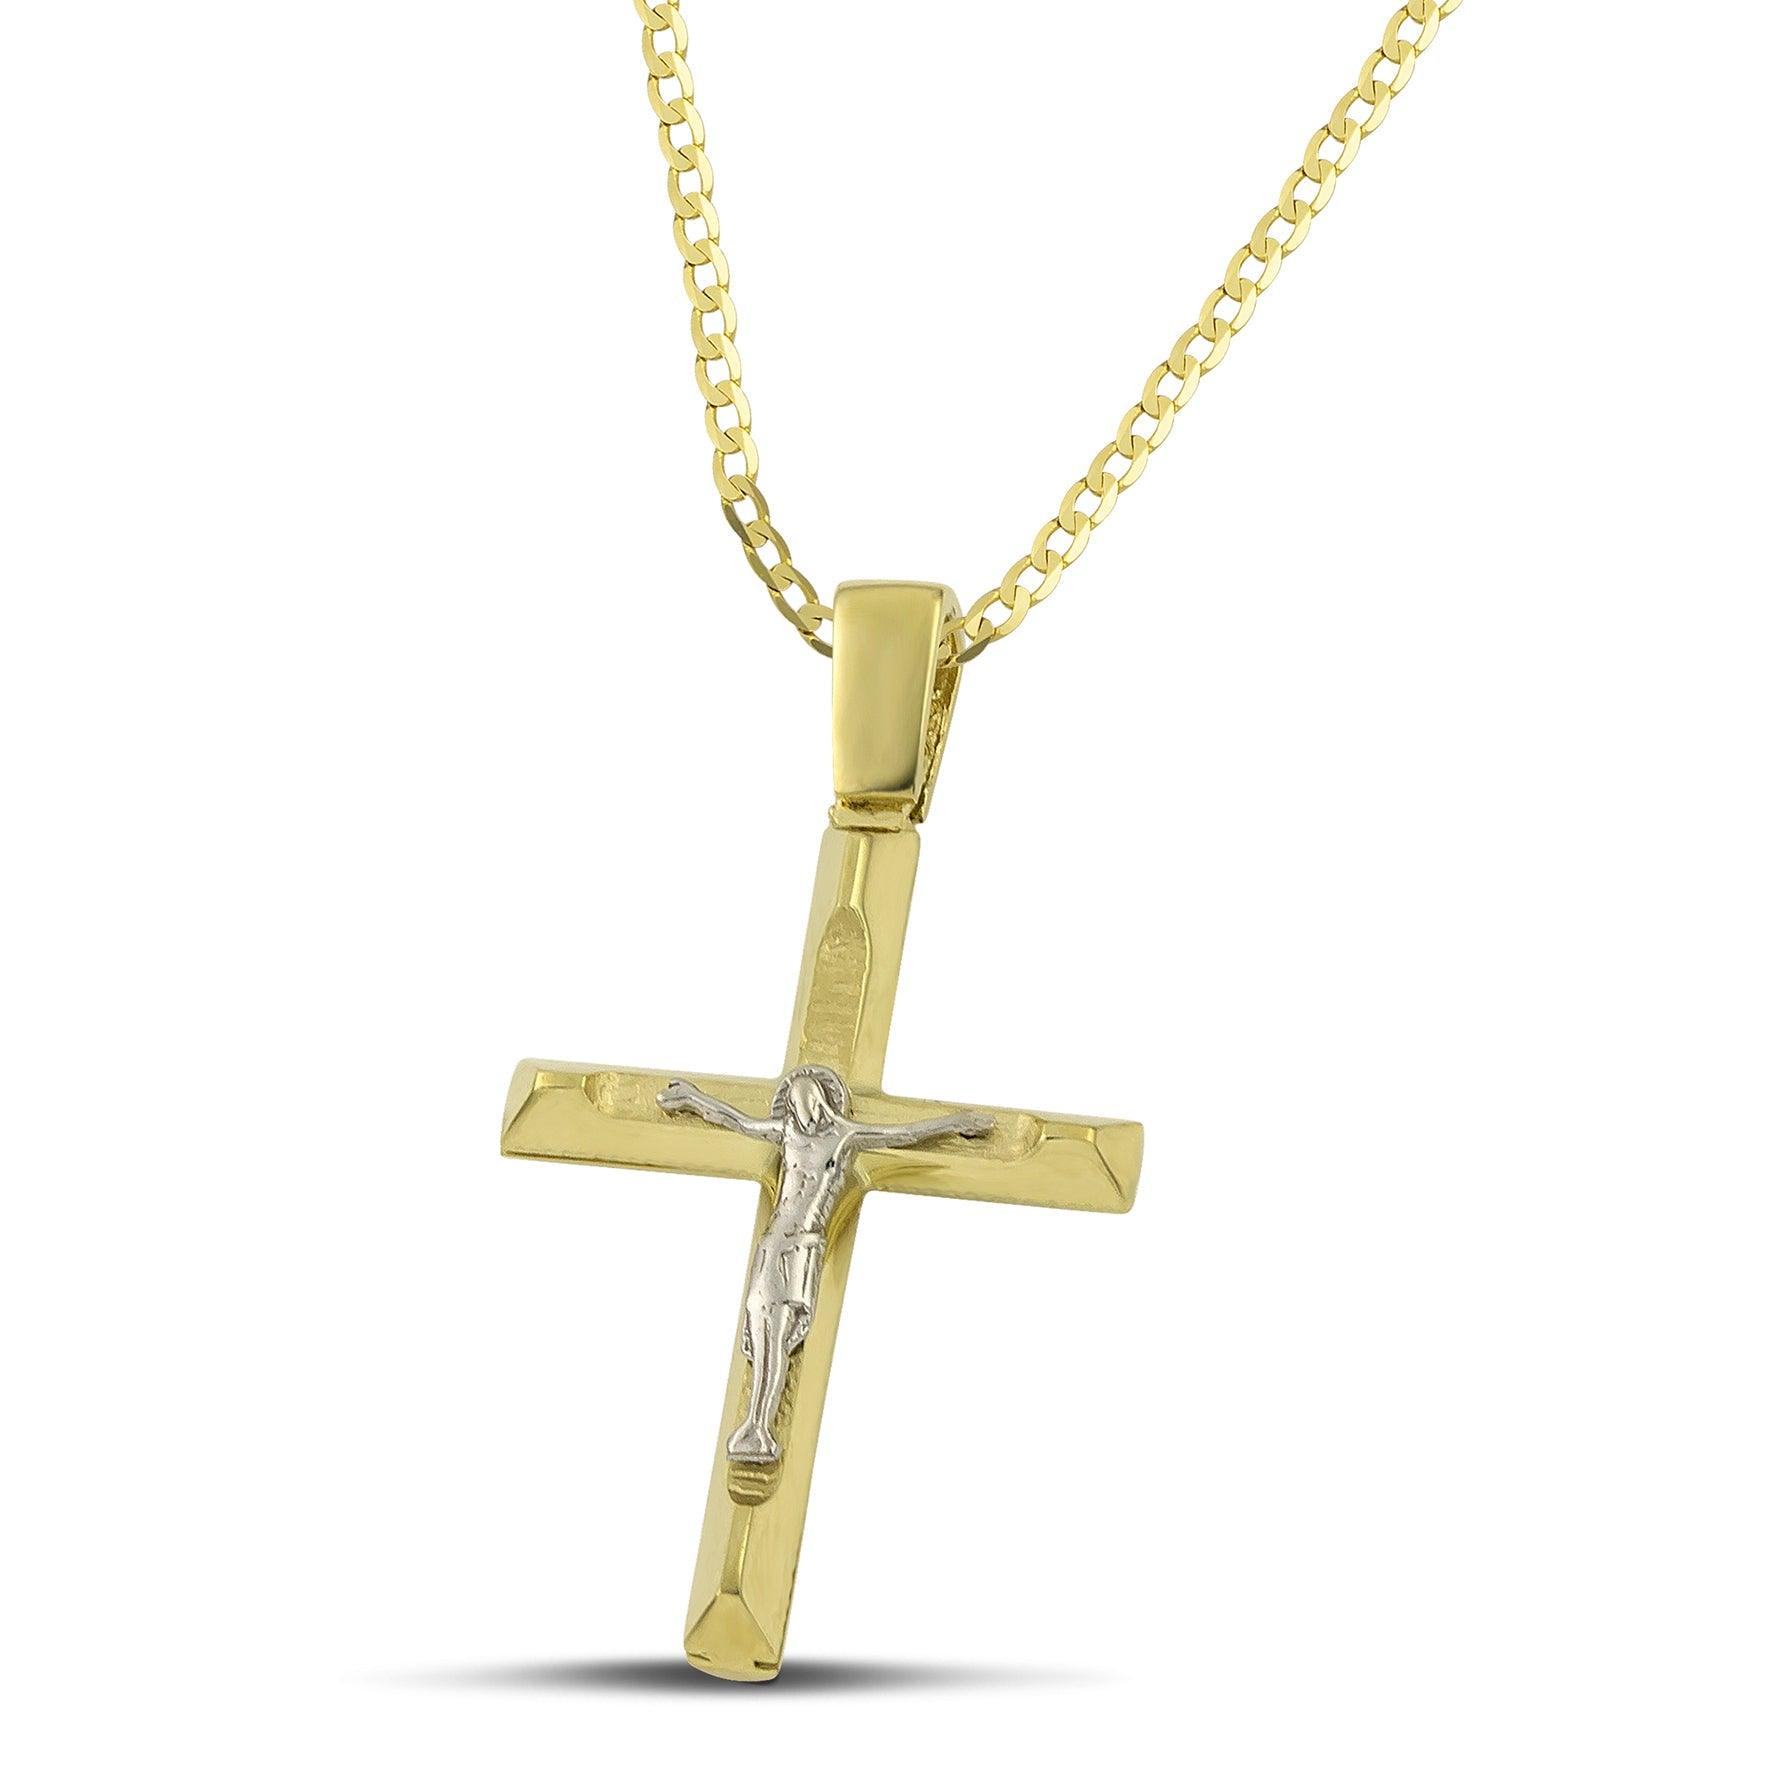 Μοντέρνος σταυρός από χρυσό Κ14 για αγόρι, με τον Εσταυρωμένο με κλασσική αλυσίδα.